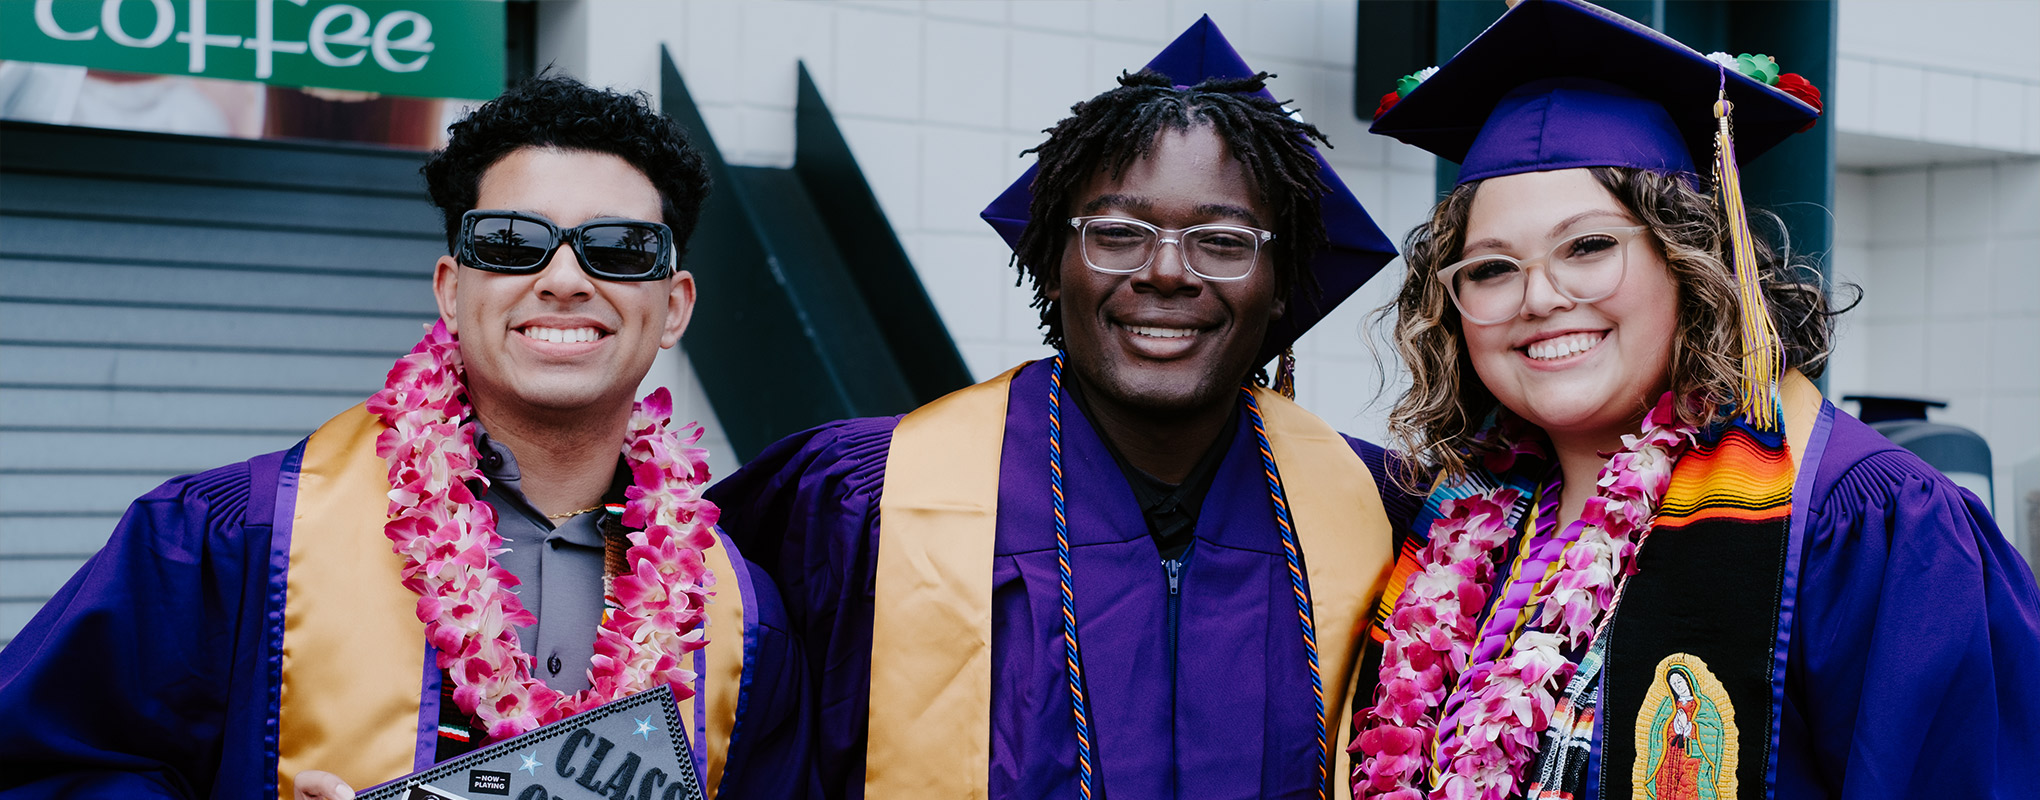 SF State graduates smile in their regalia